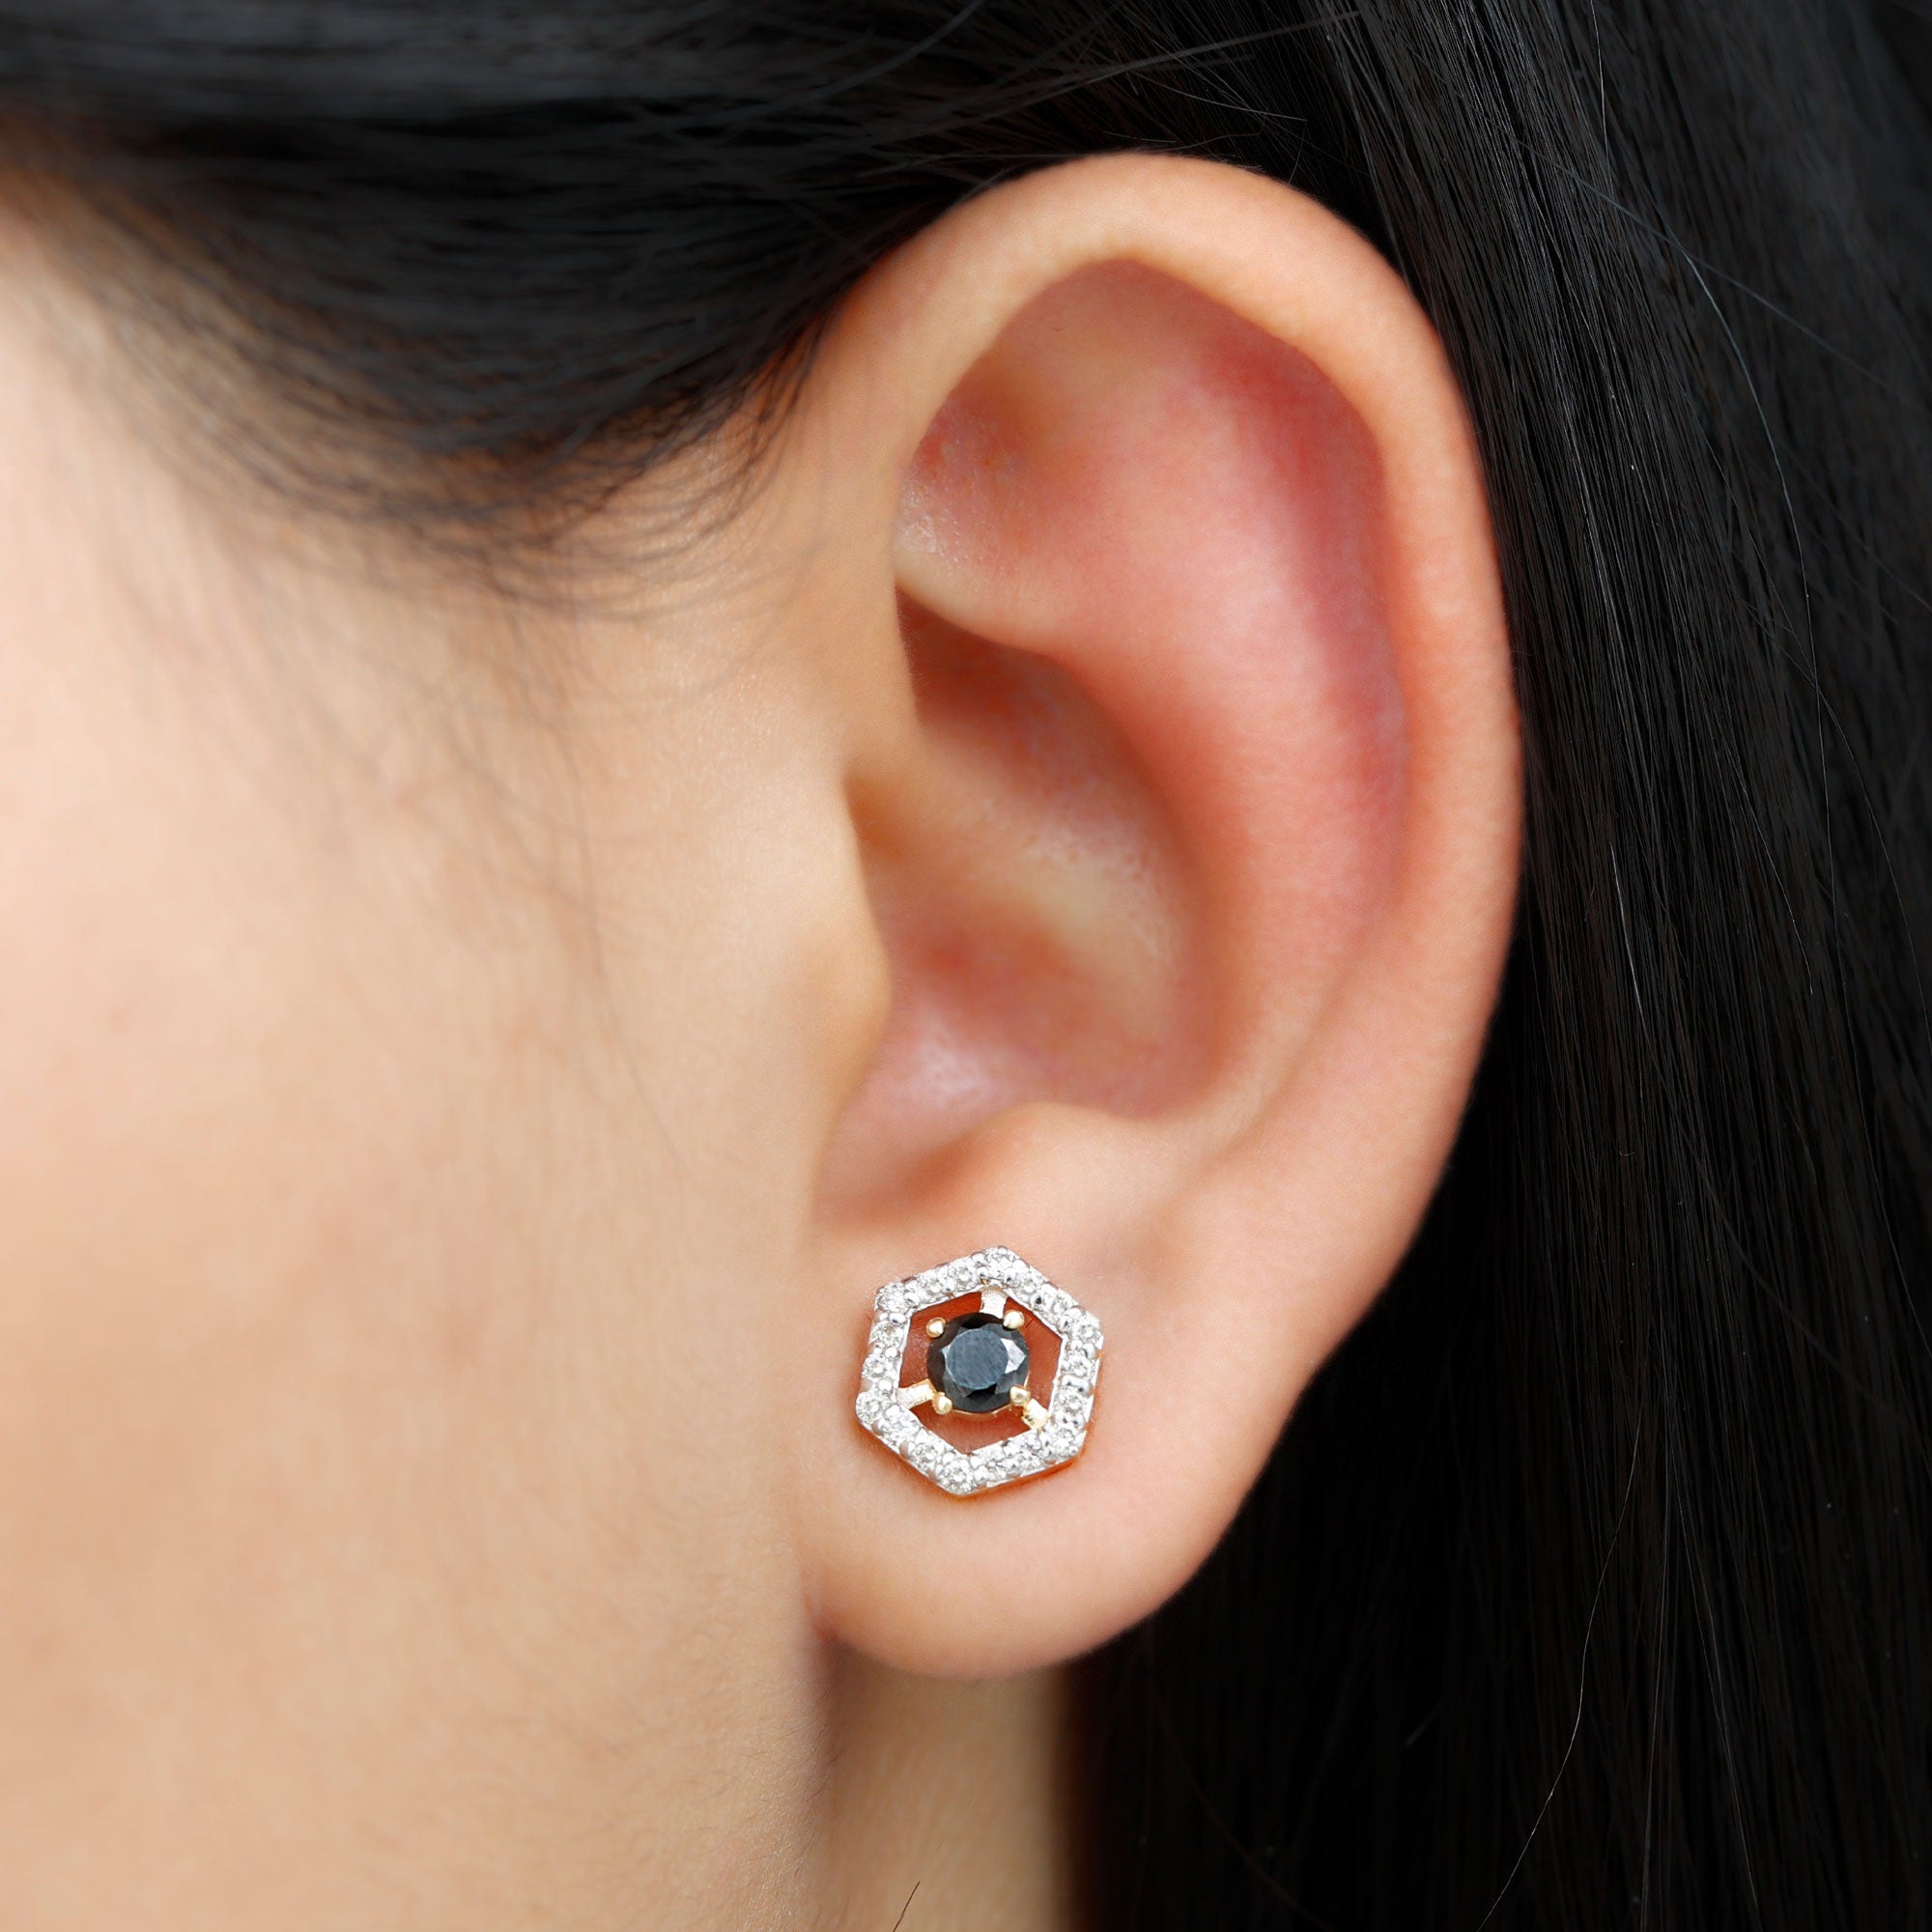 1.50 CT Minimal Black and White Diamond Geometric Stud Earrings Black Diamond - ( AAA ) - Quality - Rosec Jewels